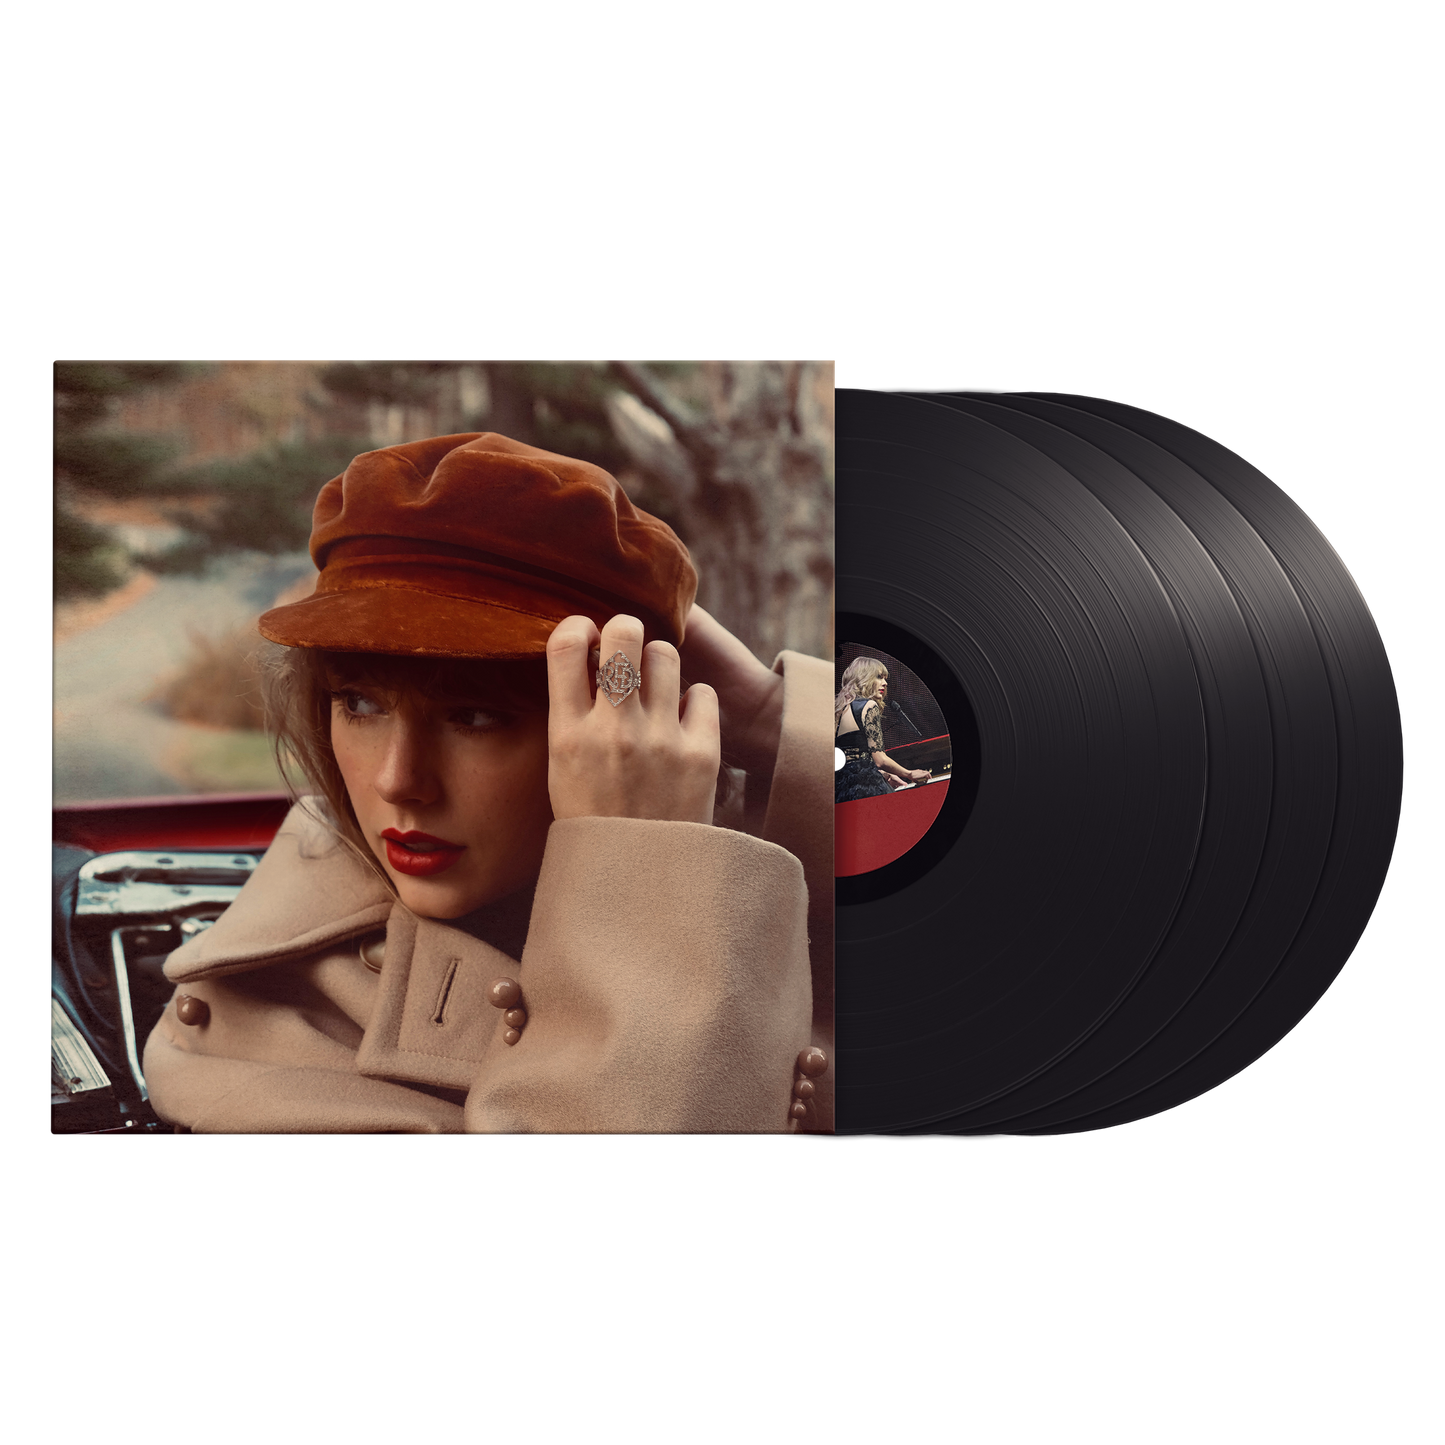 Taylor Swift - Red (Taylor's Version) [Explicit Content] (4 Lp's) - Vinyl